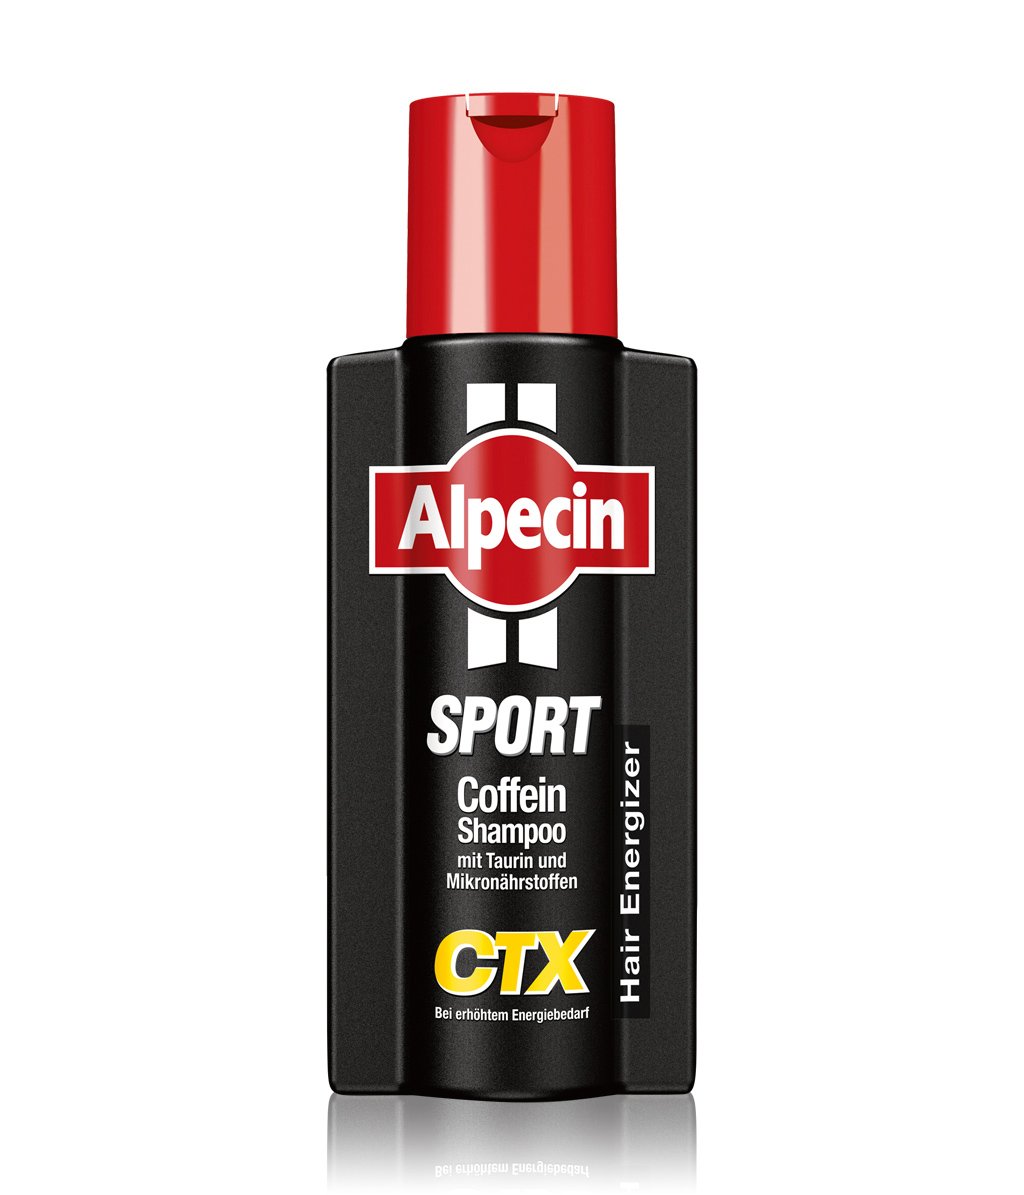 Alpecin Sport Coffein-Shampoo CTX bei sportlicher Belastung 250 ml